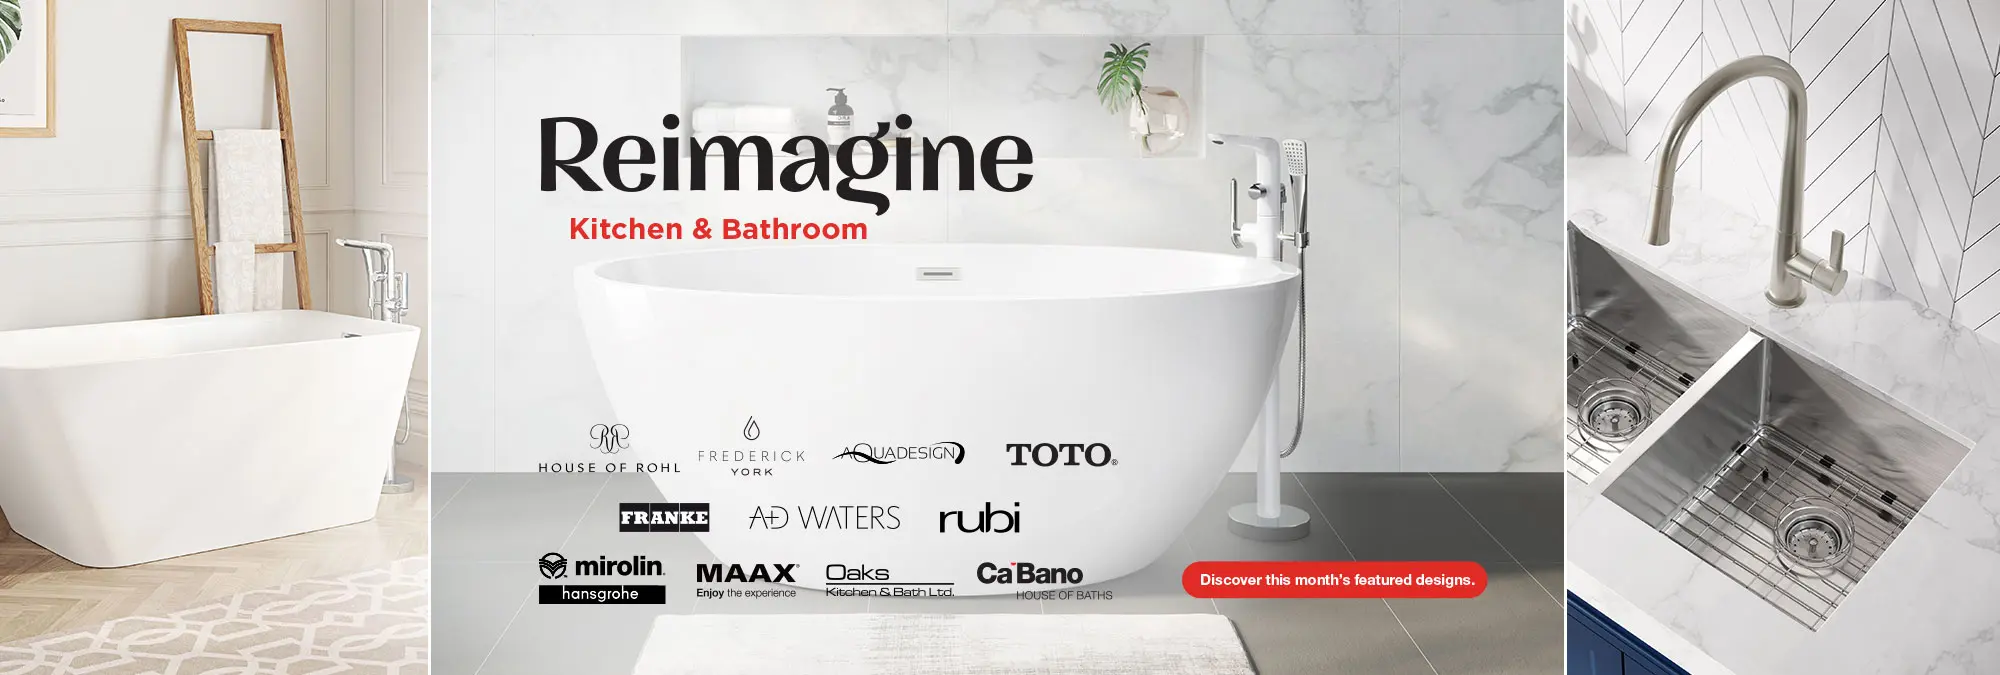 Reimagine Kitchen & Bathroom Banner